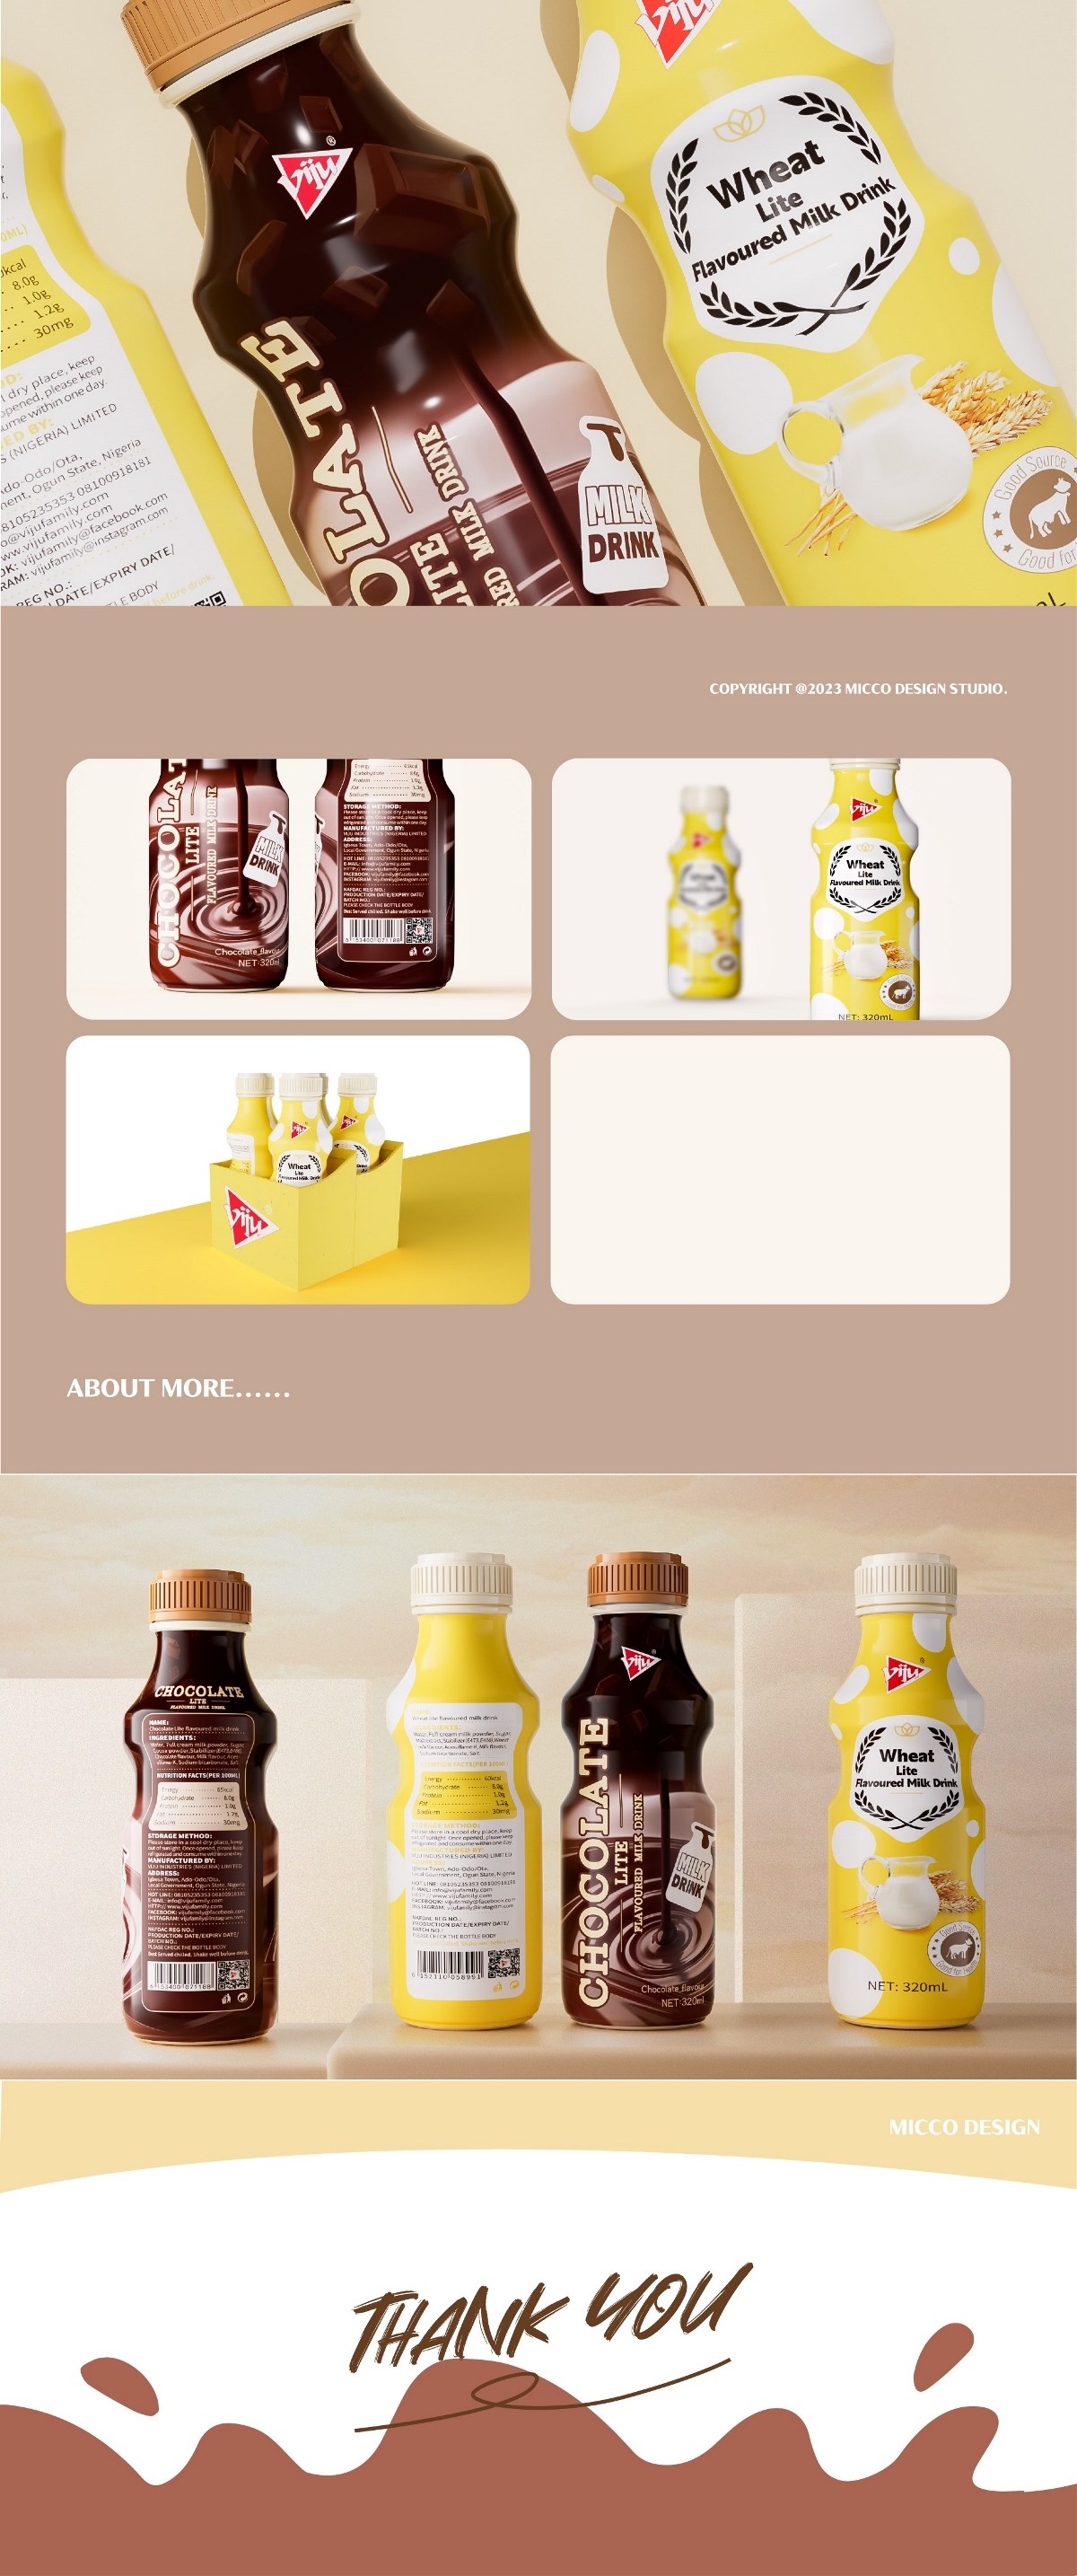 VIJU丨唯久“醇香丝滑”燕麦奶、巧克力奶包装设计